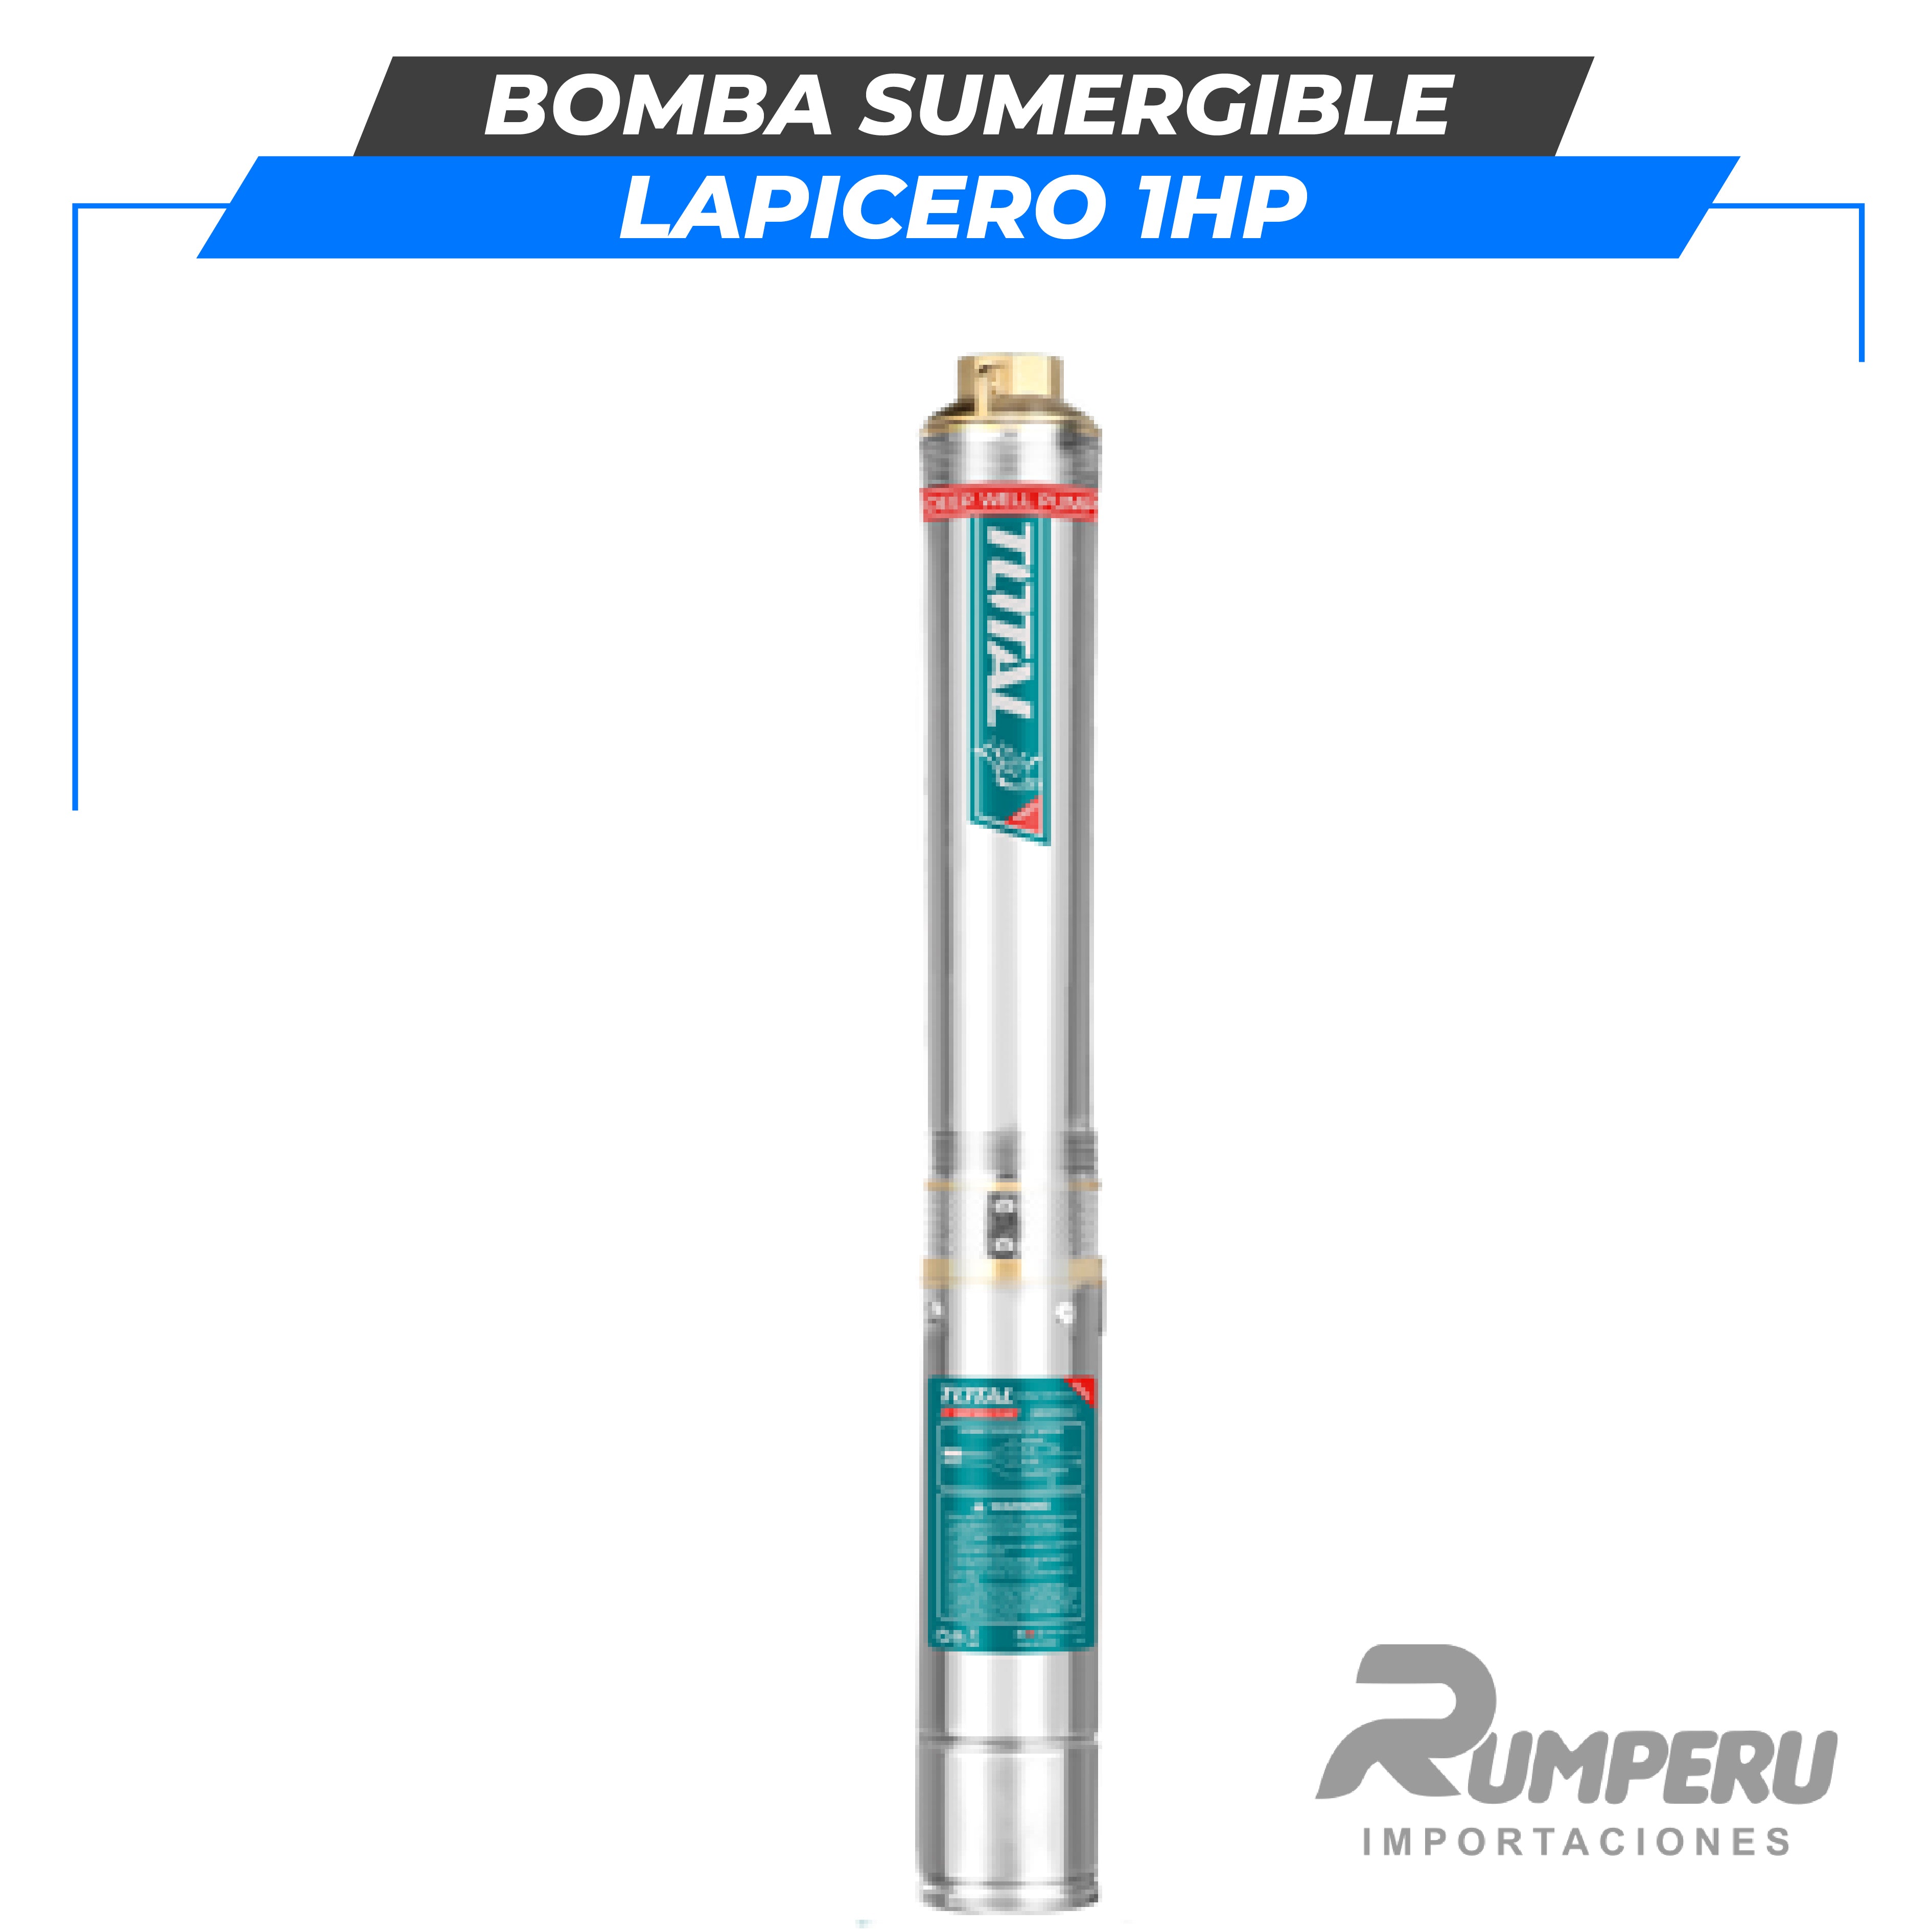 Bomba sumergible lapicero 1HP